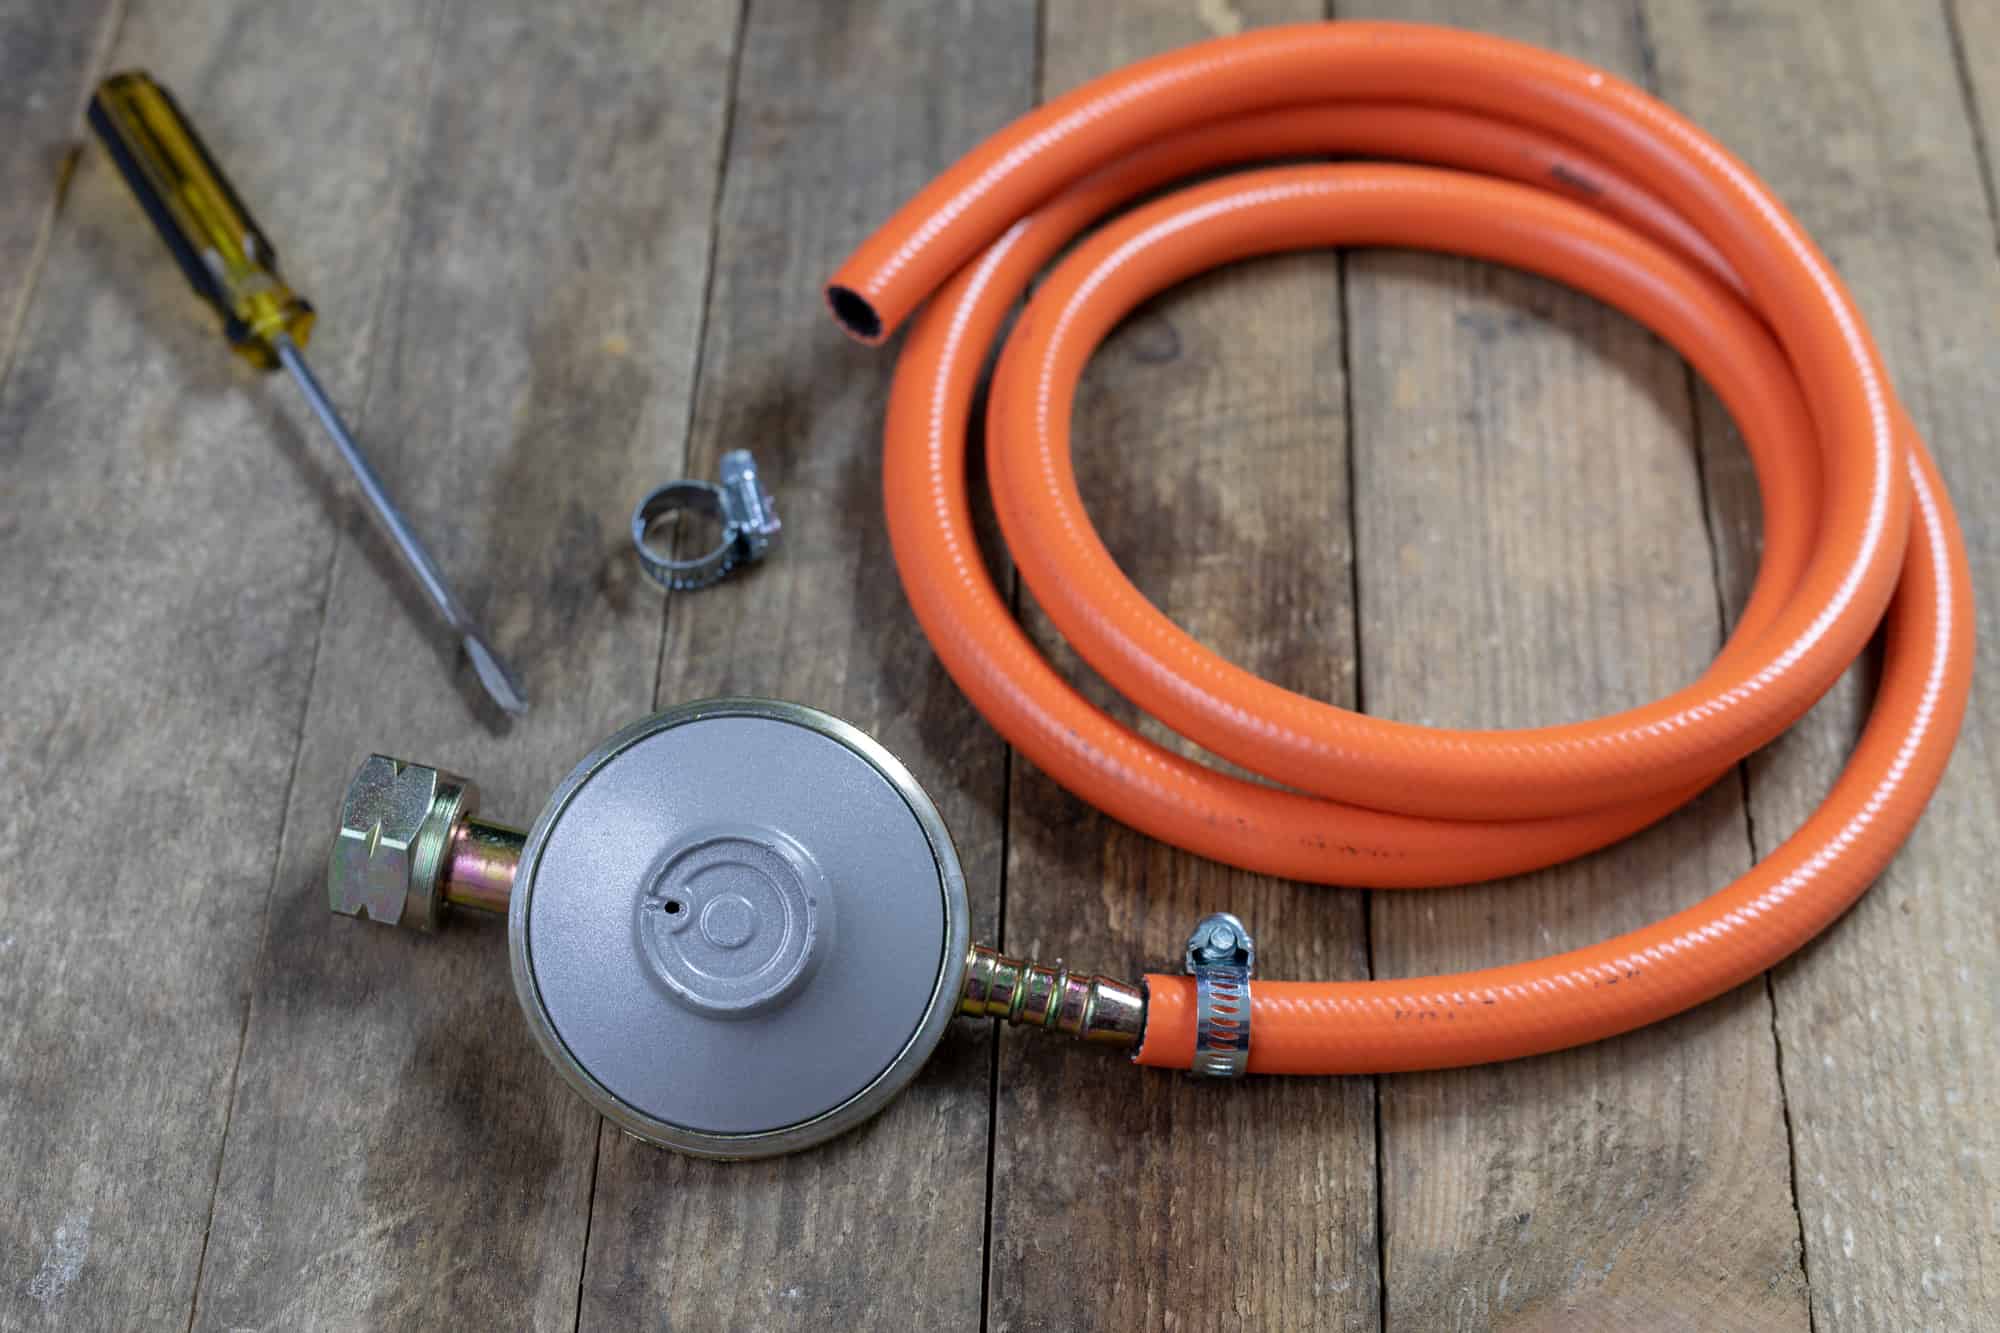 Un regulador de gas con la tuberia flexible, la presilla y el destornillador